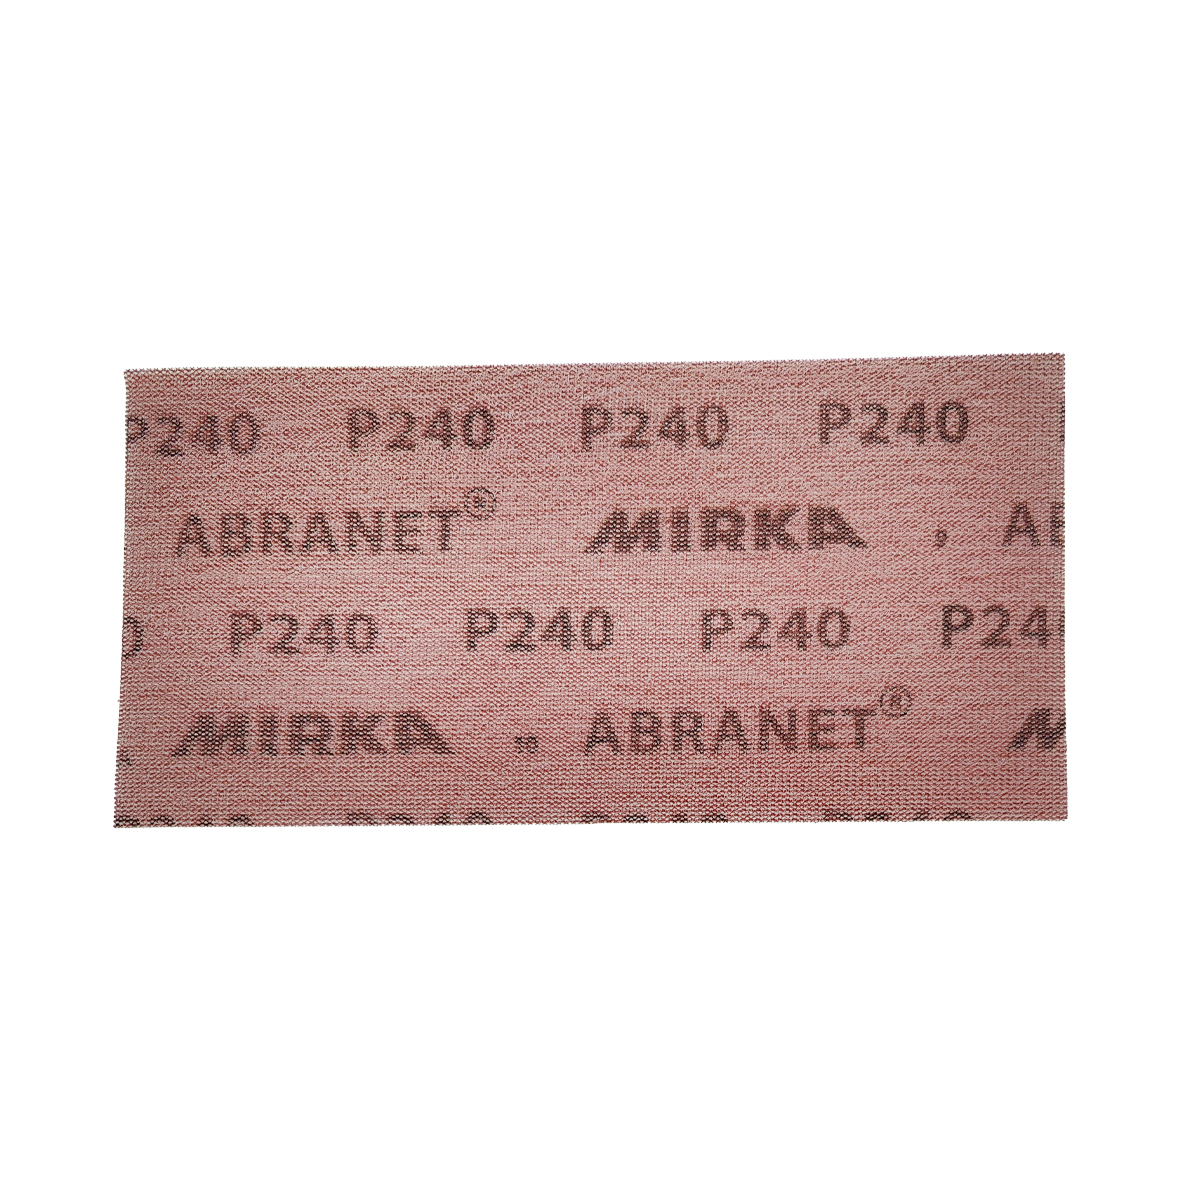 Abbildung Mirka Abranet 115x230mm Streifen Rückseite.